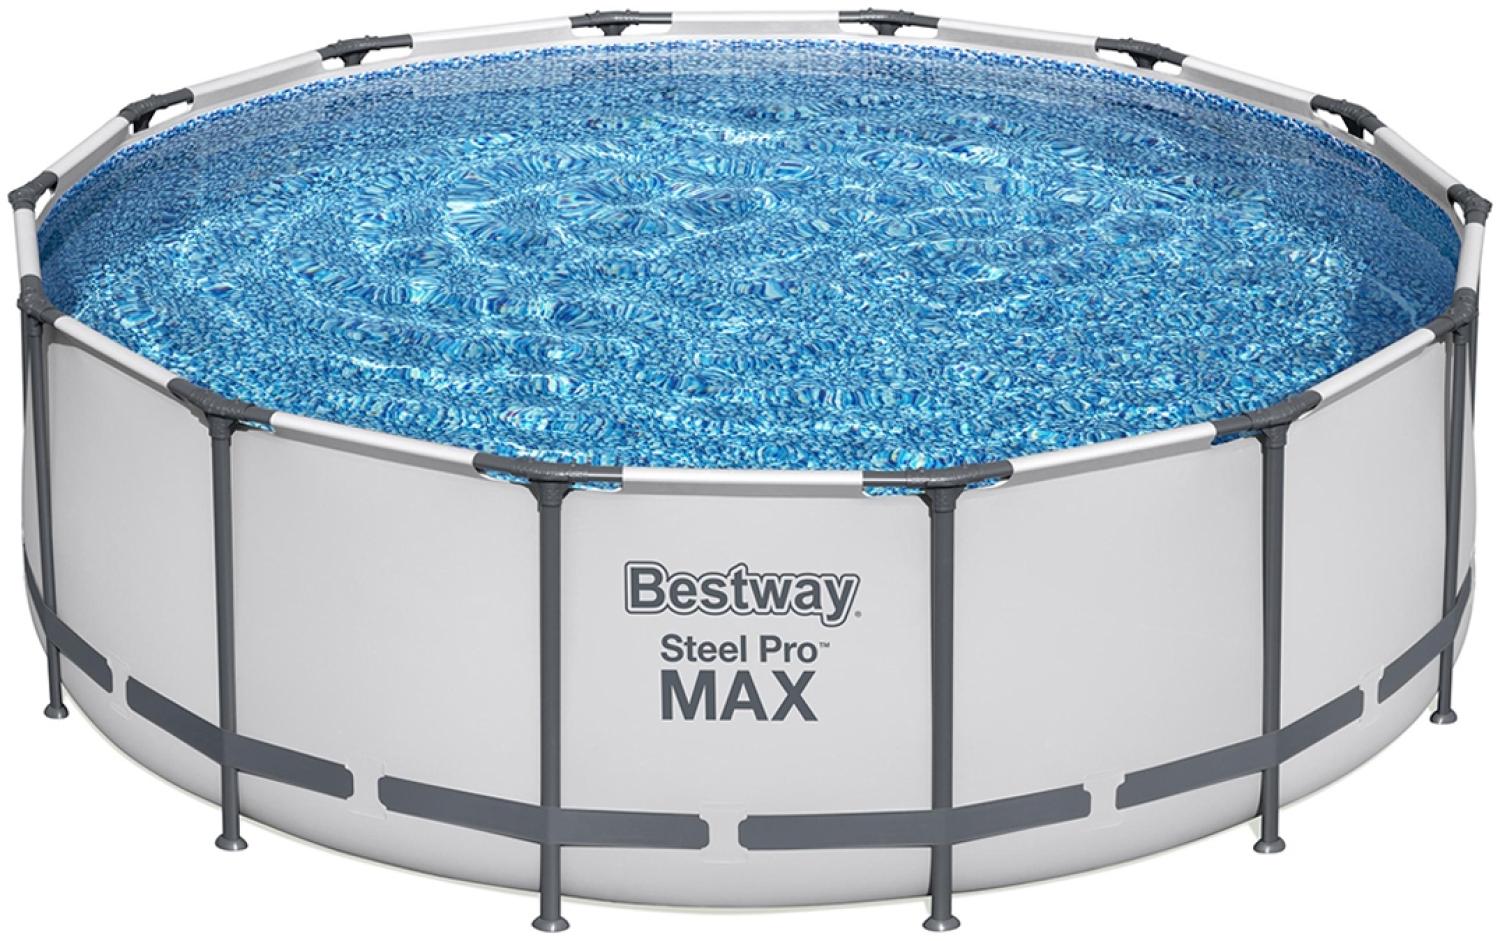 Steel Pro MAX™ Solo Pool ohne Zubehör Ø 427 x 122 cm, lichtgrau, rund Bild 1